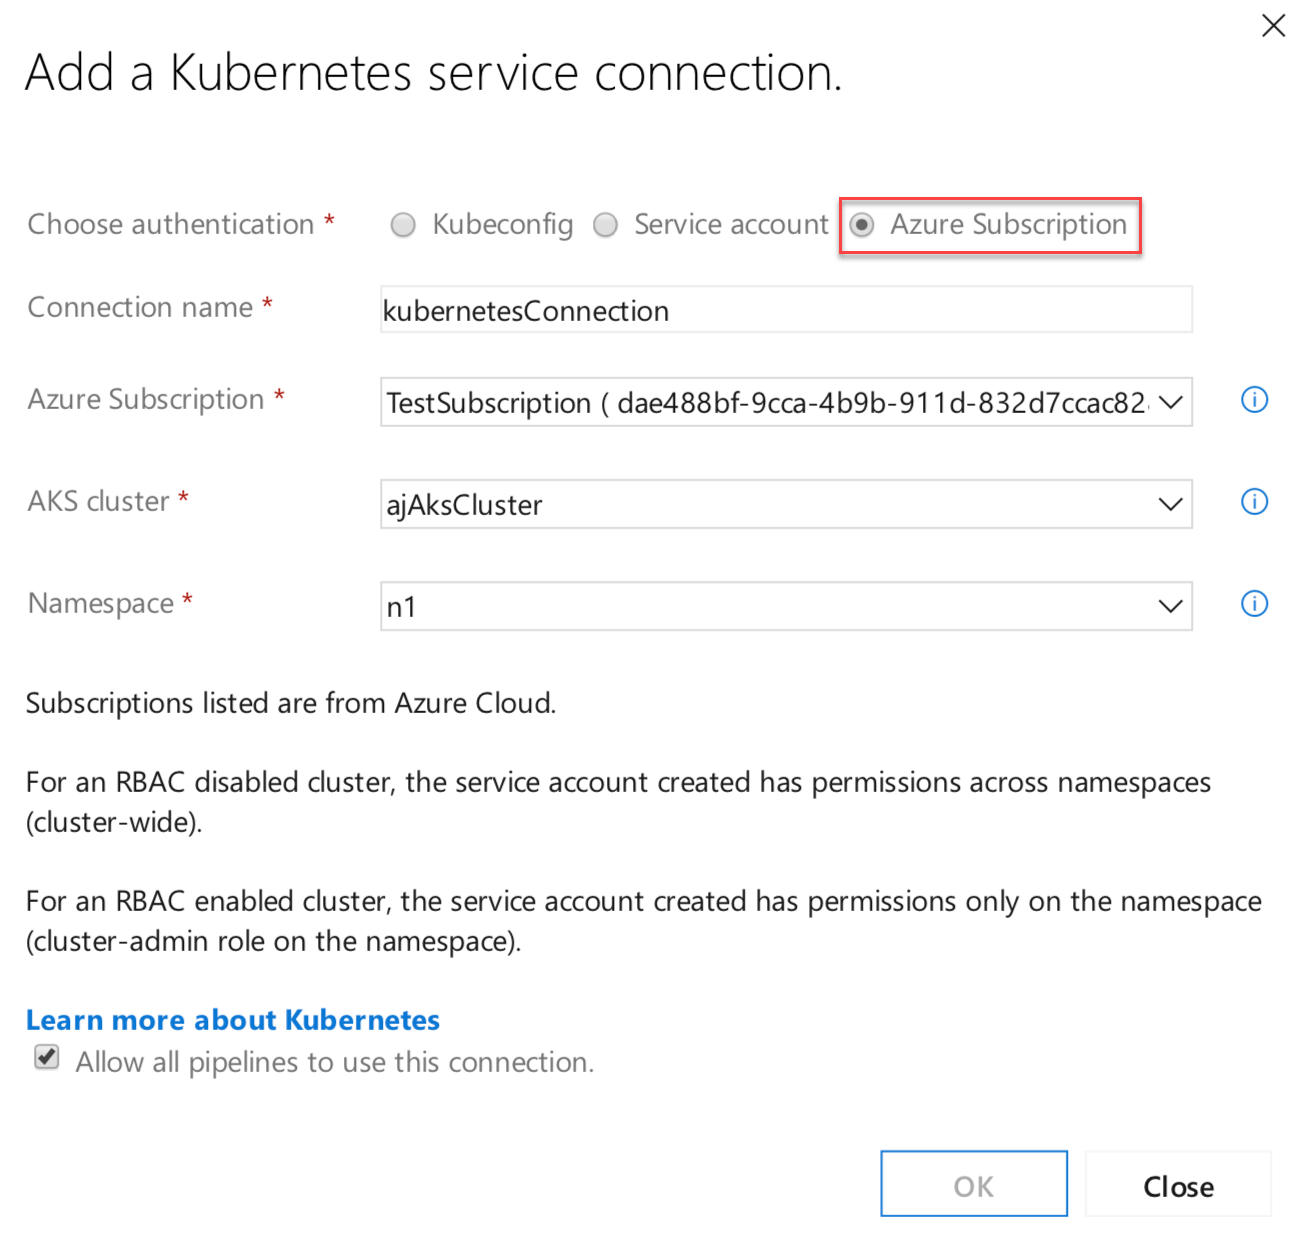 Nova opção de assinatura do Azure na conexão de serviço do Kubernetes.